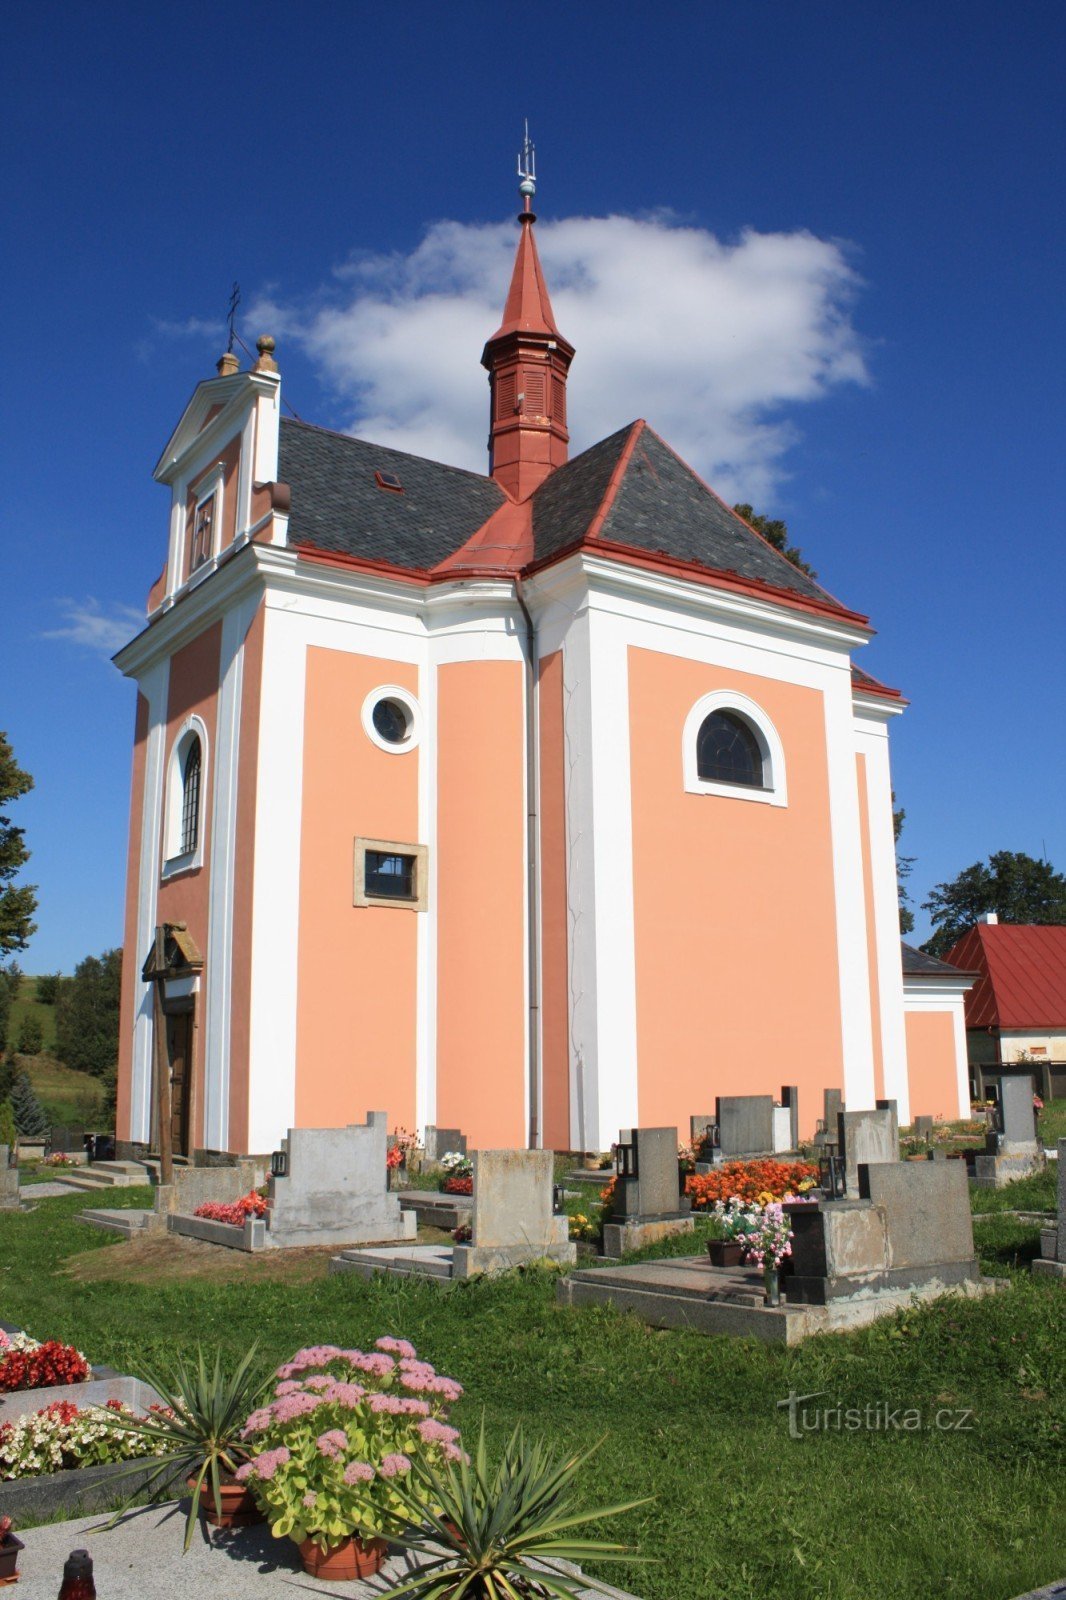 Pustá Kamenice - nhà thờ St. Anne